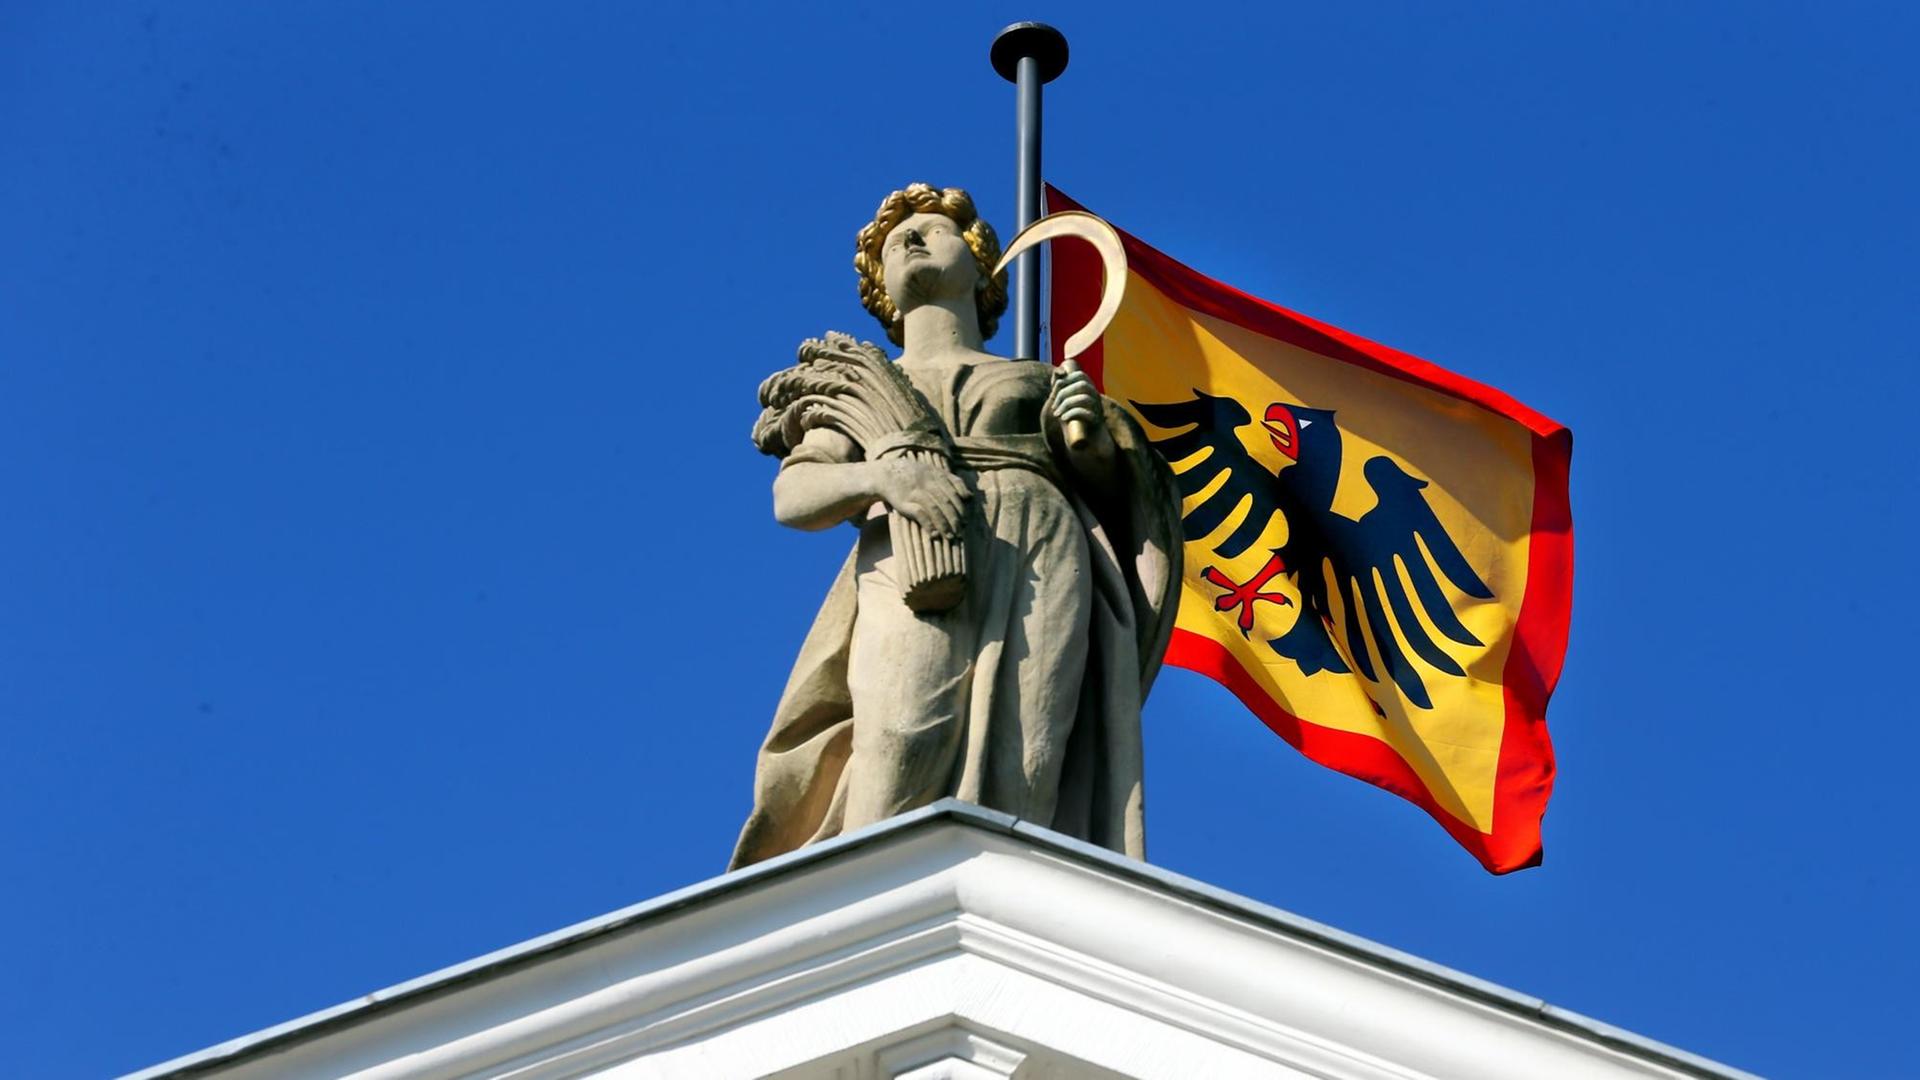 Bei strahlendem Sonnenschein und Temperaturen um neun Grad Celsius weht am 26.02.2015 auf dem Schloss Bellevue in Berlin die Dienstflagge des Bundespräsidenten, die sich farbenprächtig vor dem blauen Himmel abhebt.